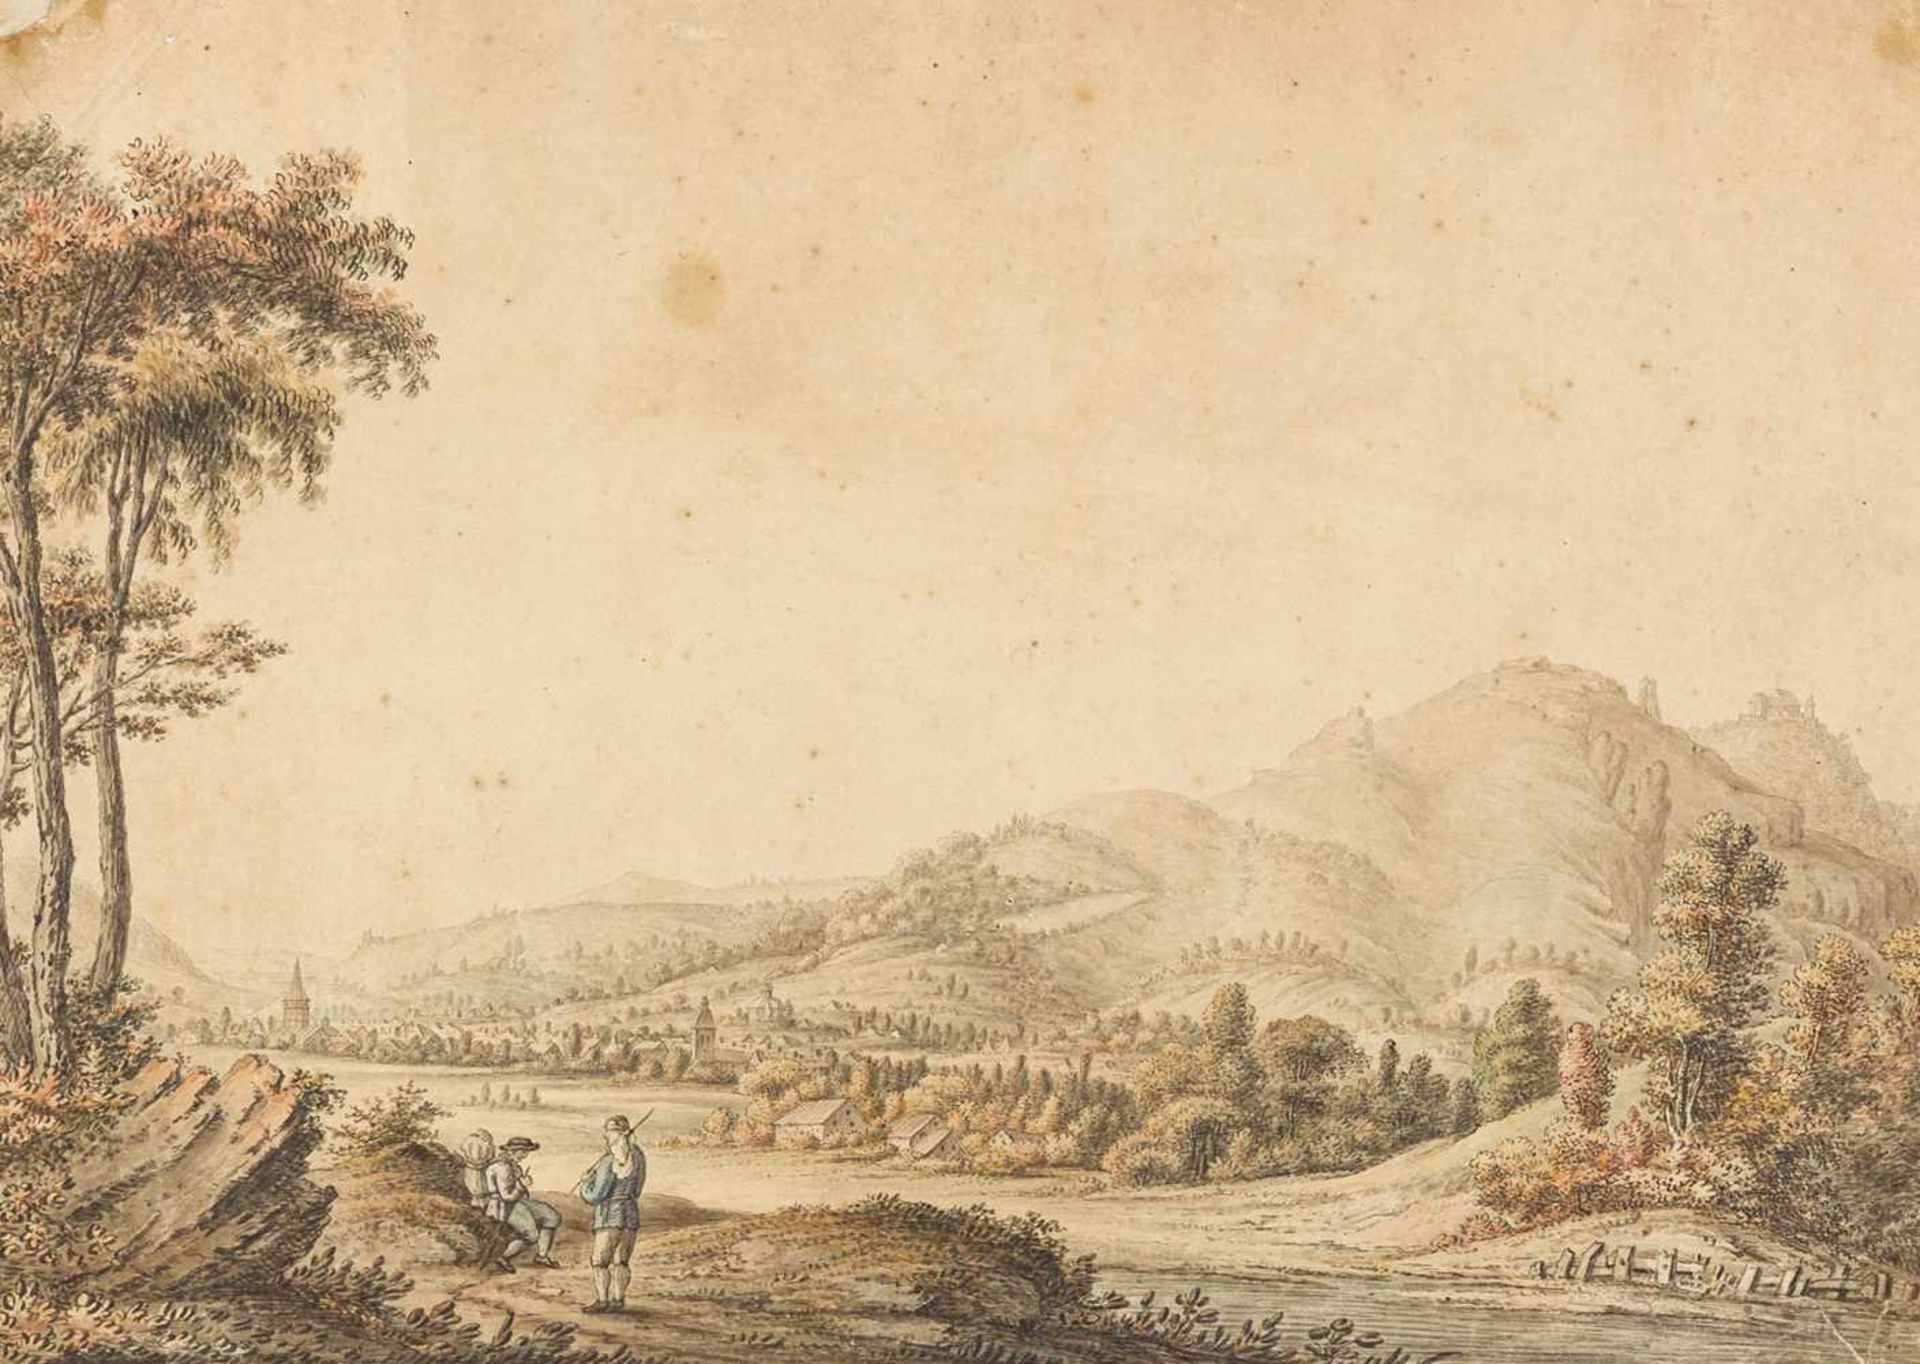 Doomer, Lambert"(1624-1700). Mittelrhein, Siebengebirge mit Insel Nonnenwerth. Zeichnung. Tuschfeder